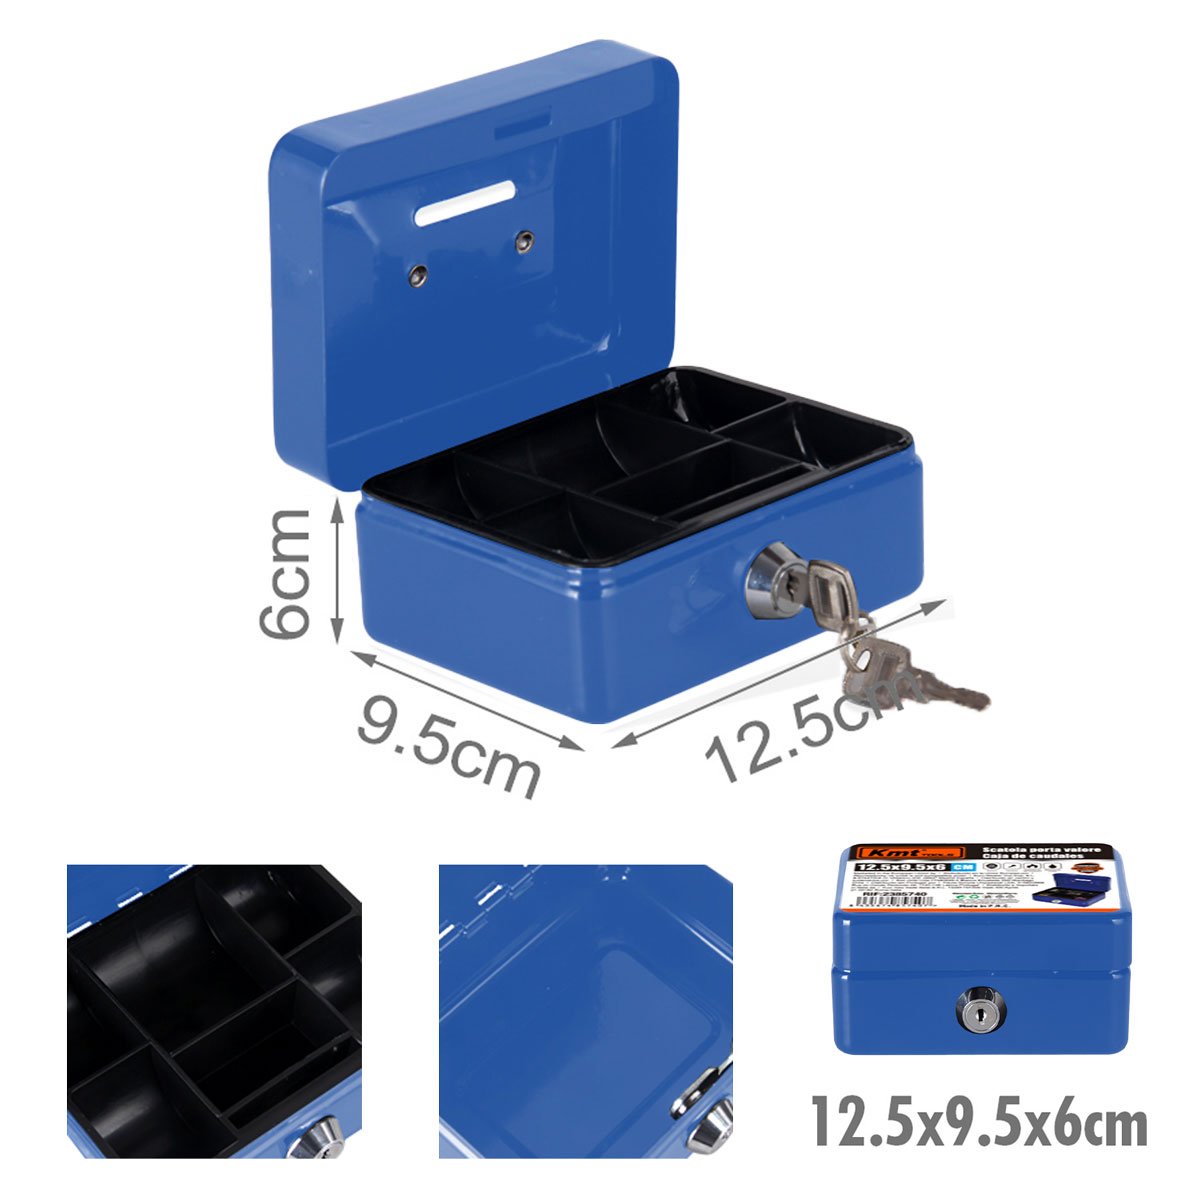 Cassetta Portavalori di Sicurezza in Acciaio con 2 Chiavi, Cassette dei contanti Vassoio Portamonete Integrato, Dimensioni 12,5x9,5x6cm, Colore Blu